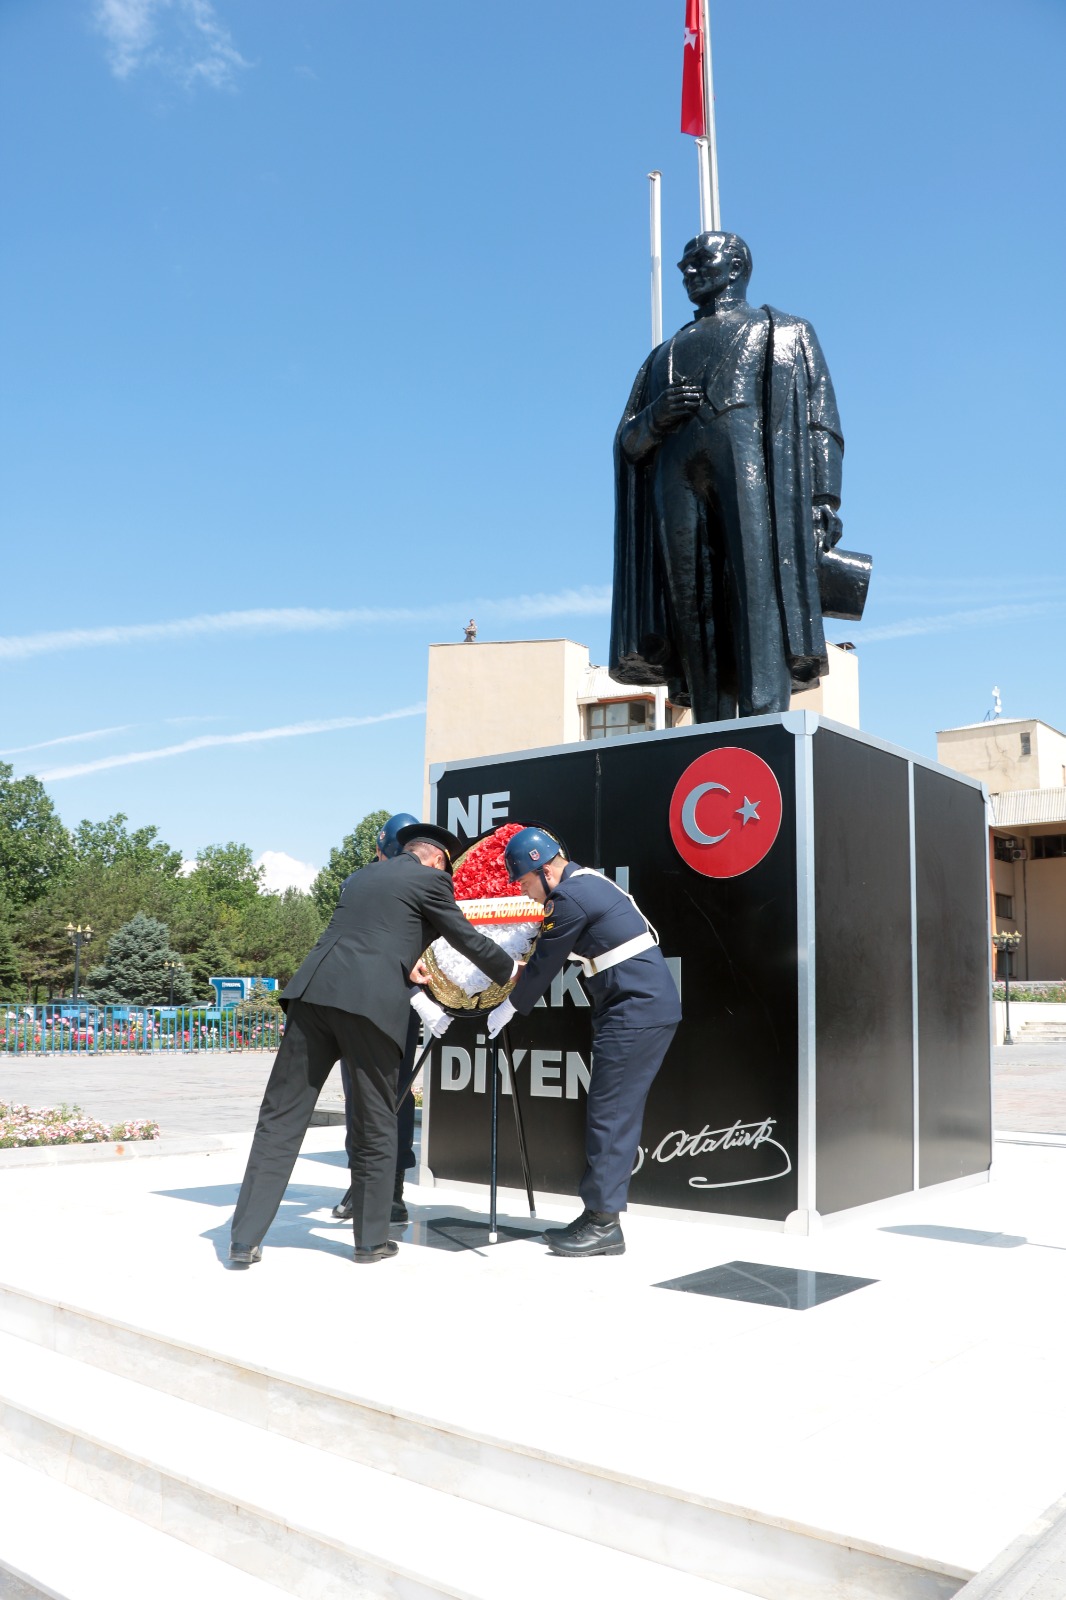 14.06.2023 tarihinde Ulu Önder Mustafa Kemal Atatürk Anıtına J.Gn.K.lığı çelengi sunulmuş, saygı duruşunu müteakip İstiklal Marşı okunarak anma töreni icra edilmiştir.